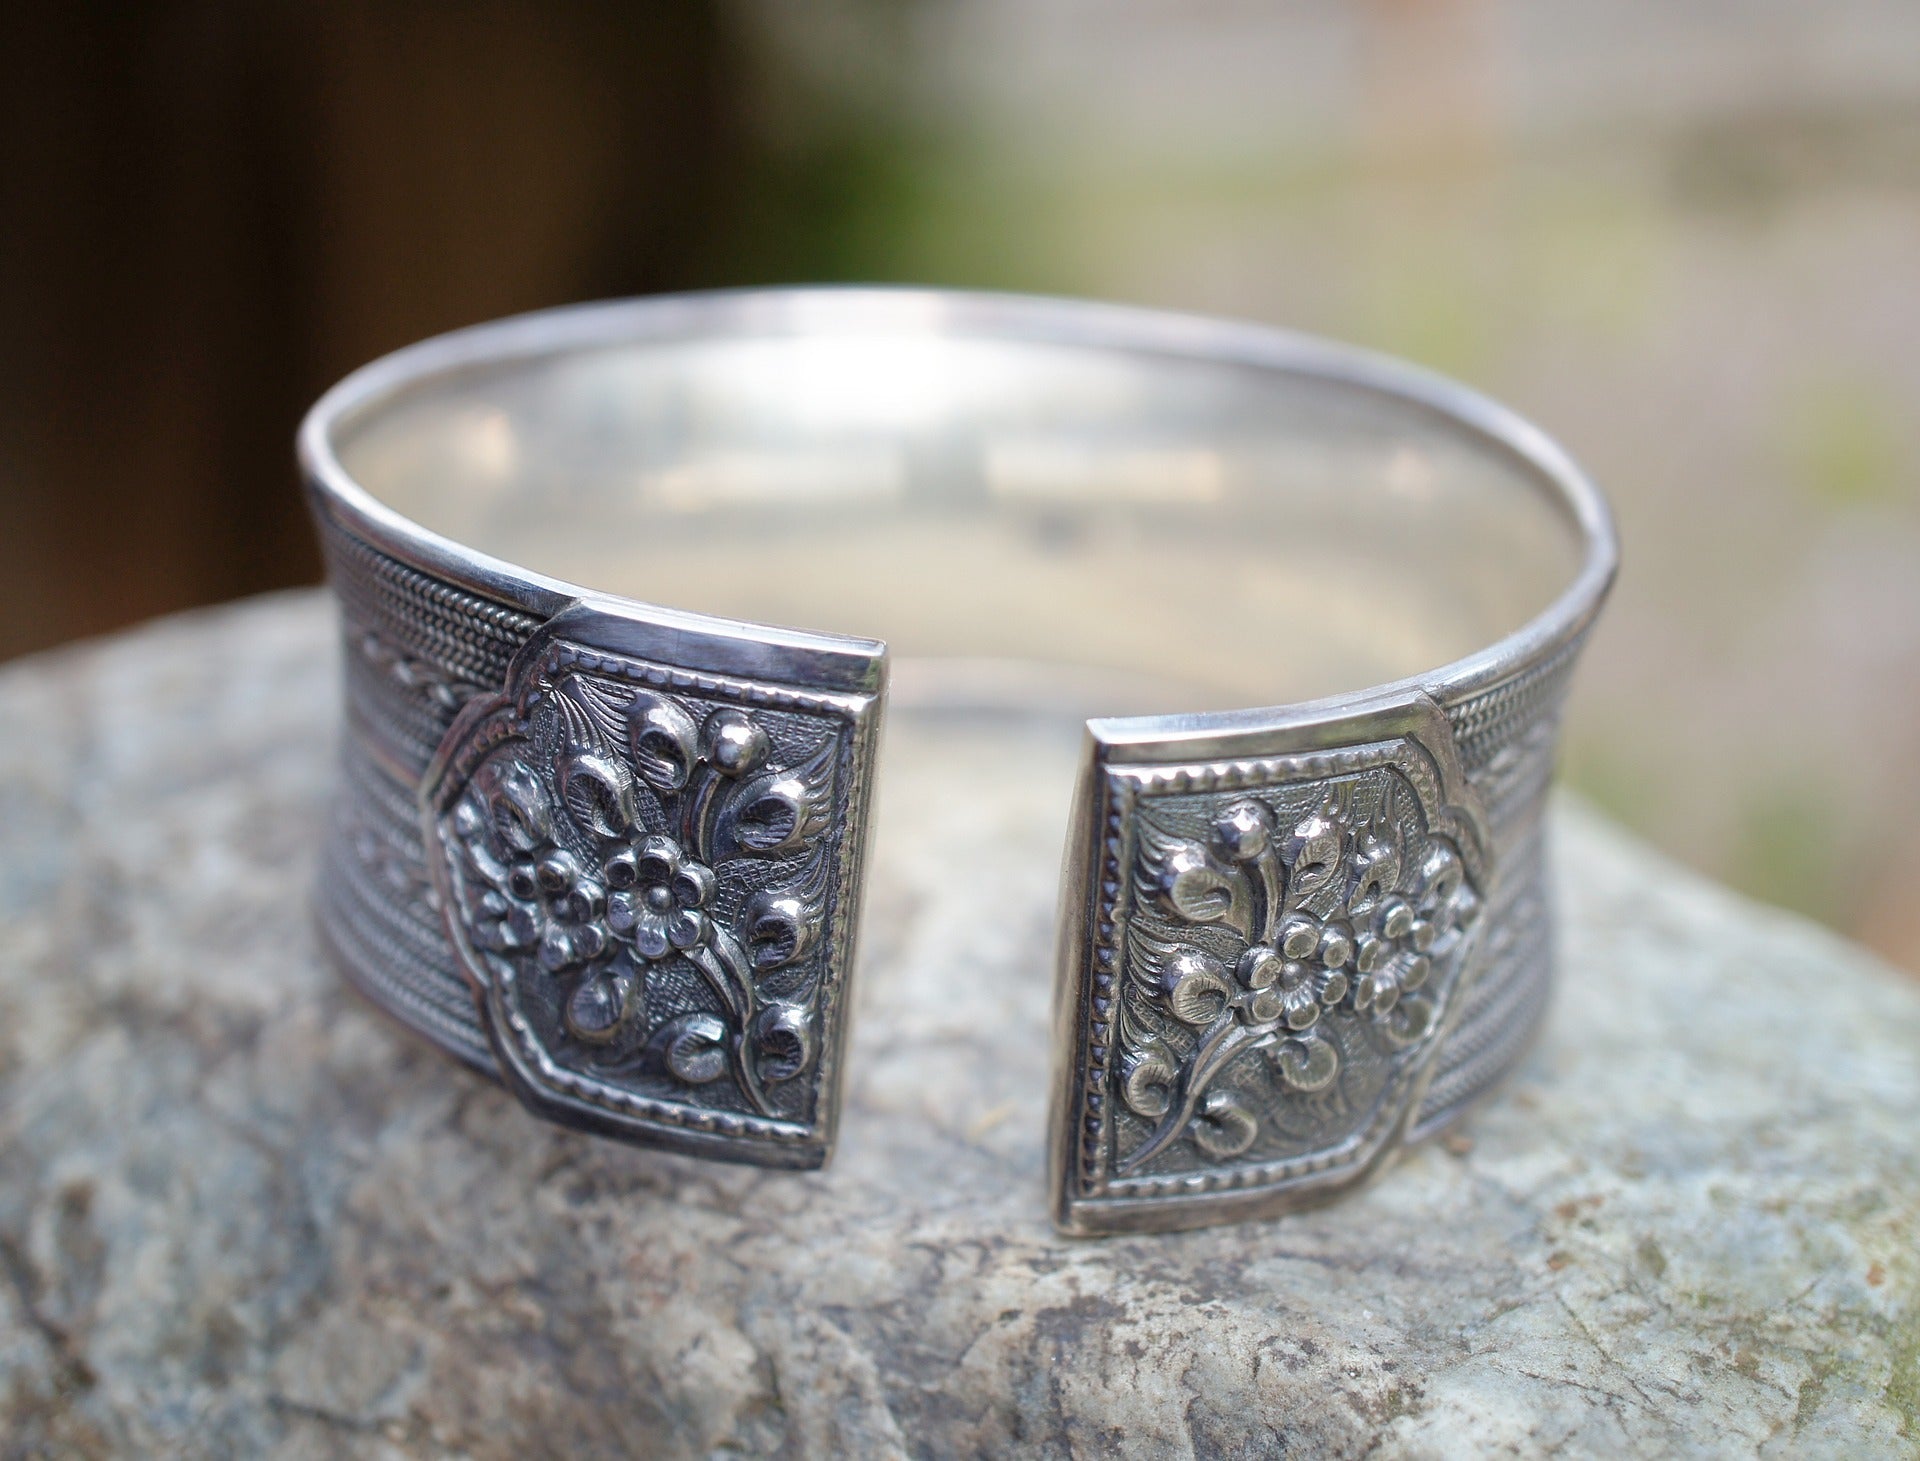 Silver bracelet with flower design